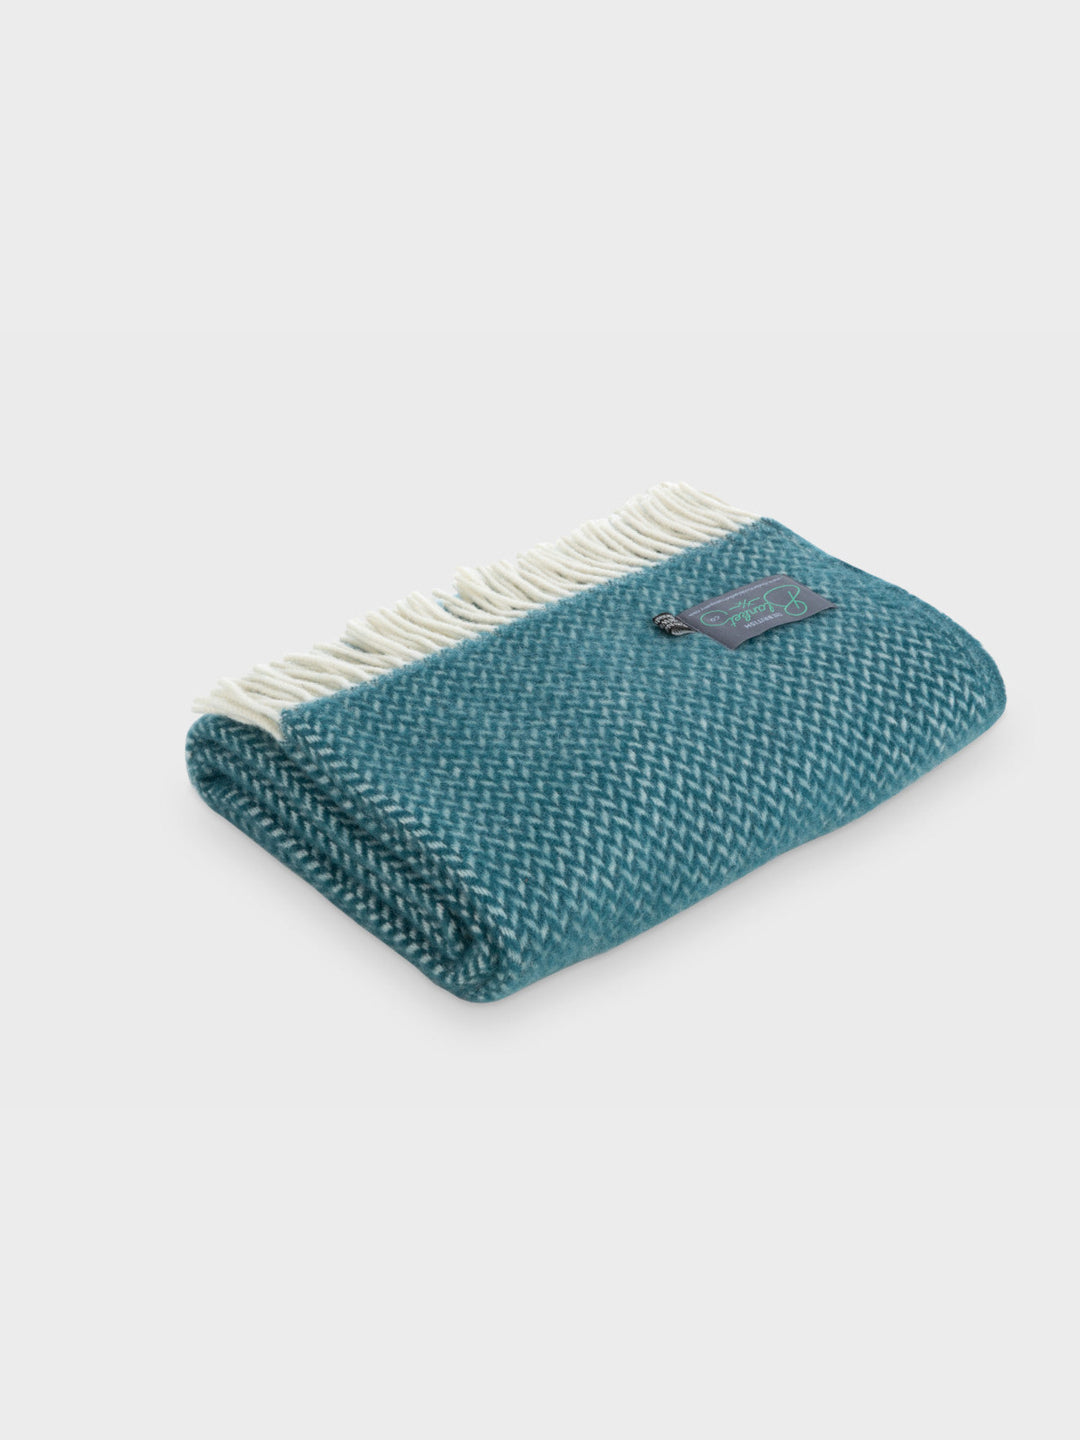 A folded green herringbone wool blanket by The British Blanket Company.